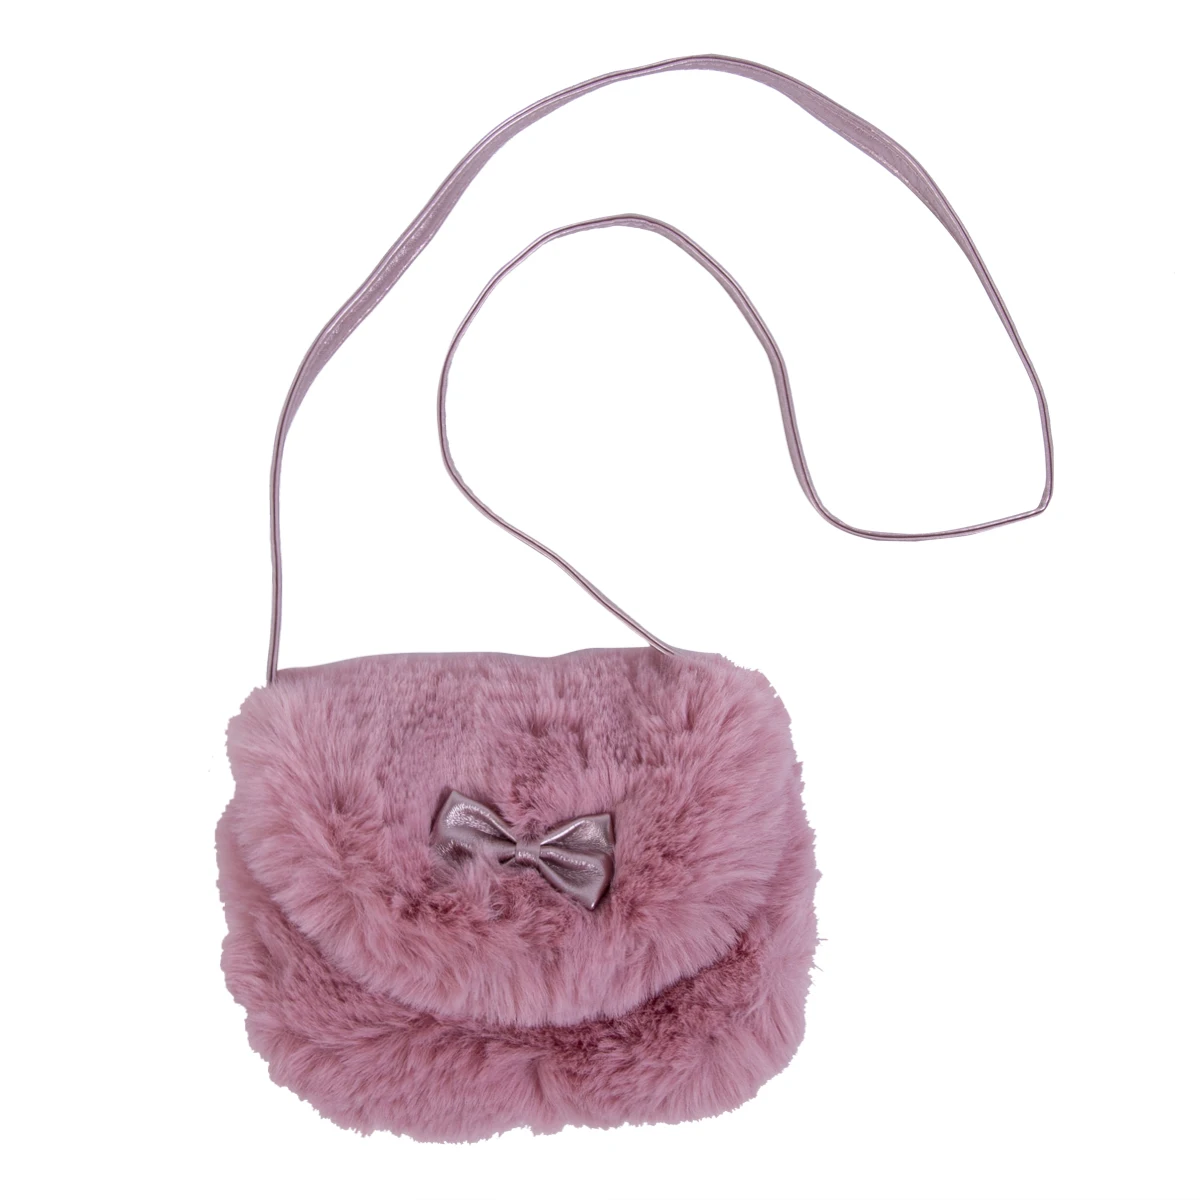 5 цветов, популярные детские меховые плюшевые рюкзаки для девочек, мини сумки из искусственного меха с бантом, удобная милая сумка через плечо